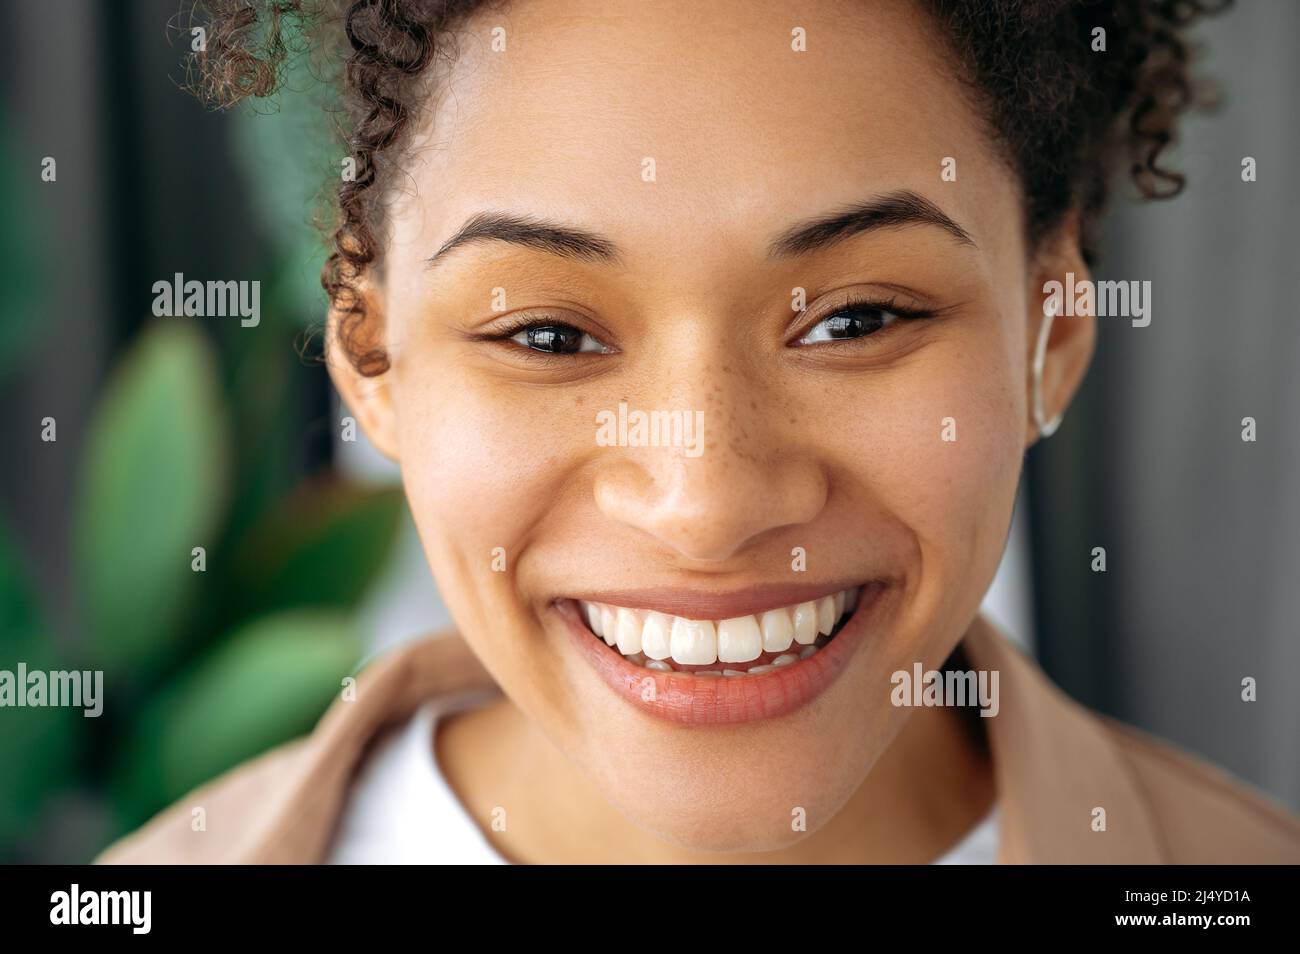 Foto de primer plano de una hermosa mujer joven afroamericana de pelo rizado positivo, chica de raza mixta con pecas, mirando la cámara, sonriendo, mostrando su sonrisa blanca como la nieve Foto de stock